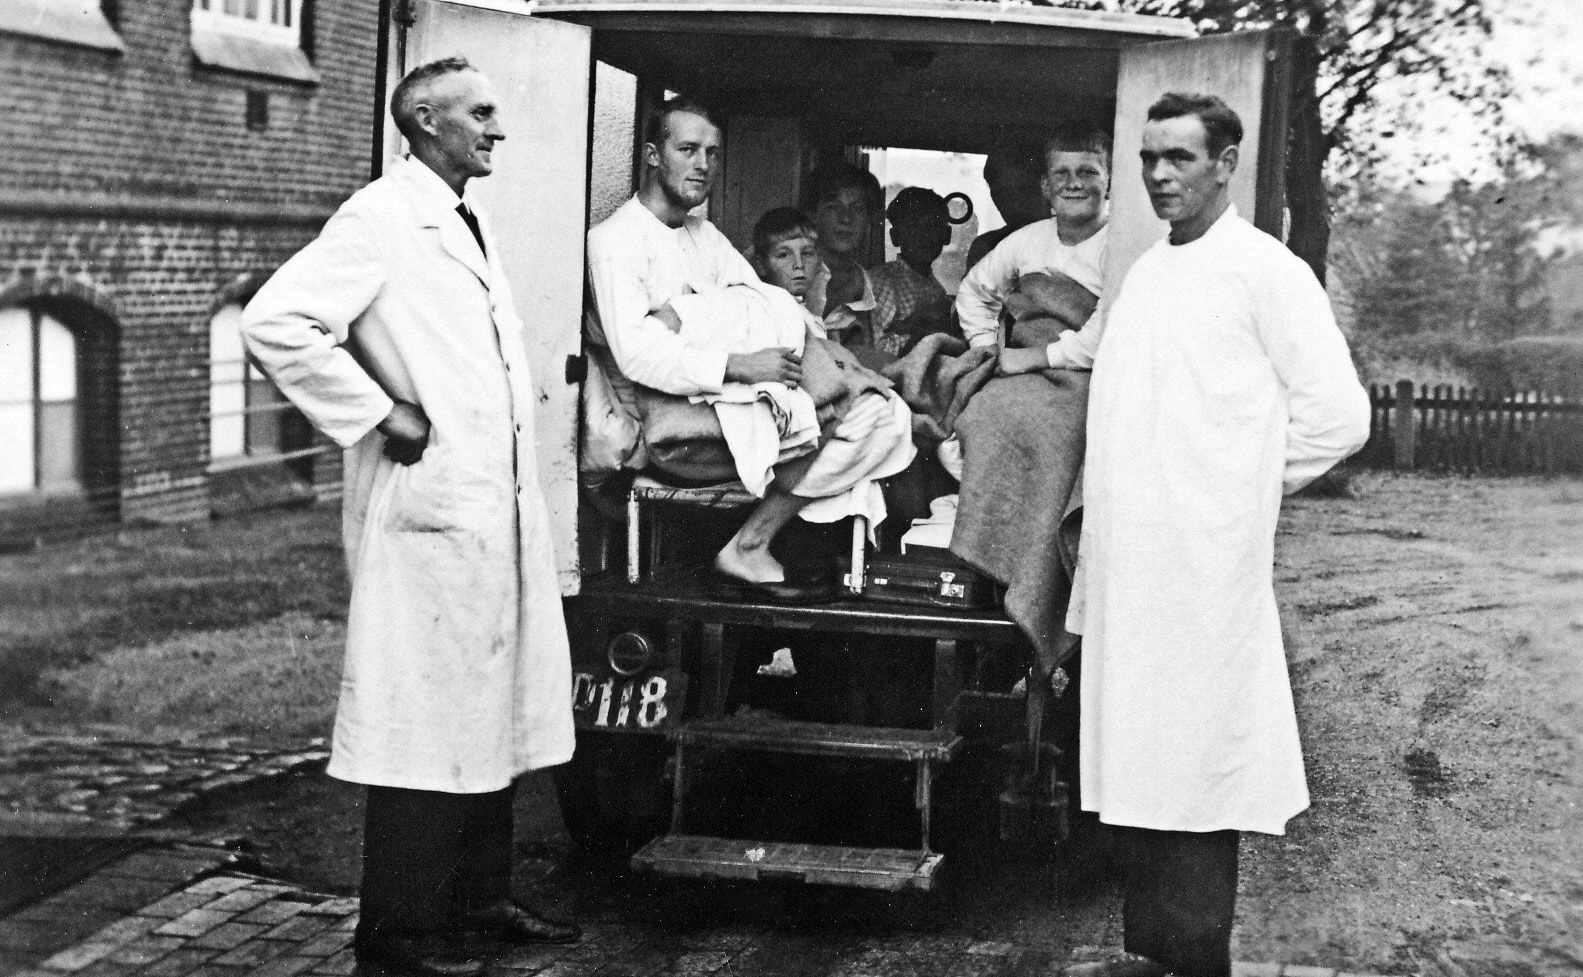 Polioepidemien i Haderslev 1934. Ambulance med voksne patienter og børn.